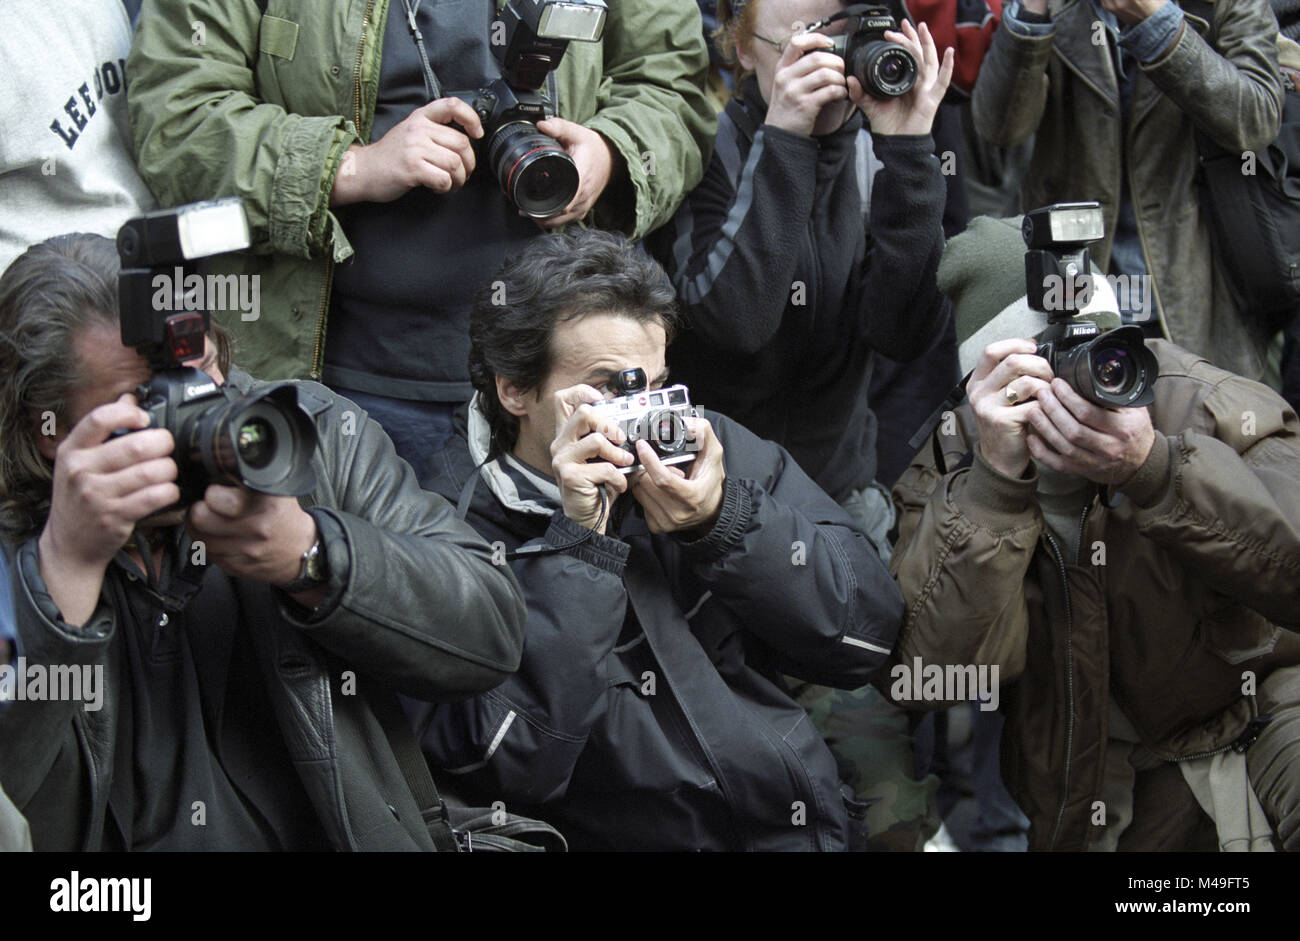 Los fotógrafos toman imágenes durante mayo día de protestas en Londres 2002 Foto de stock